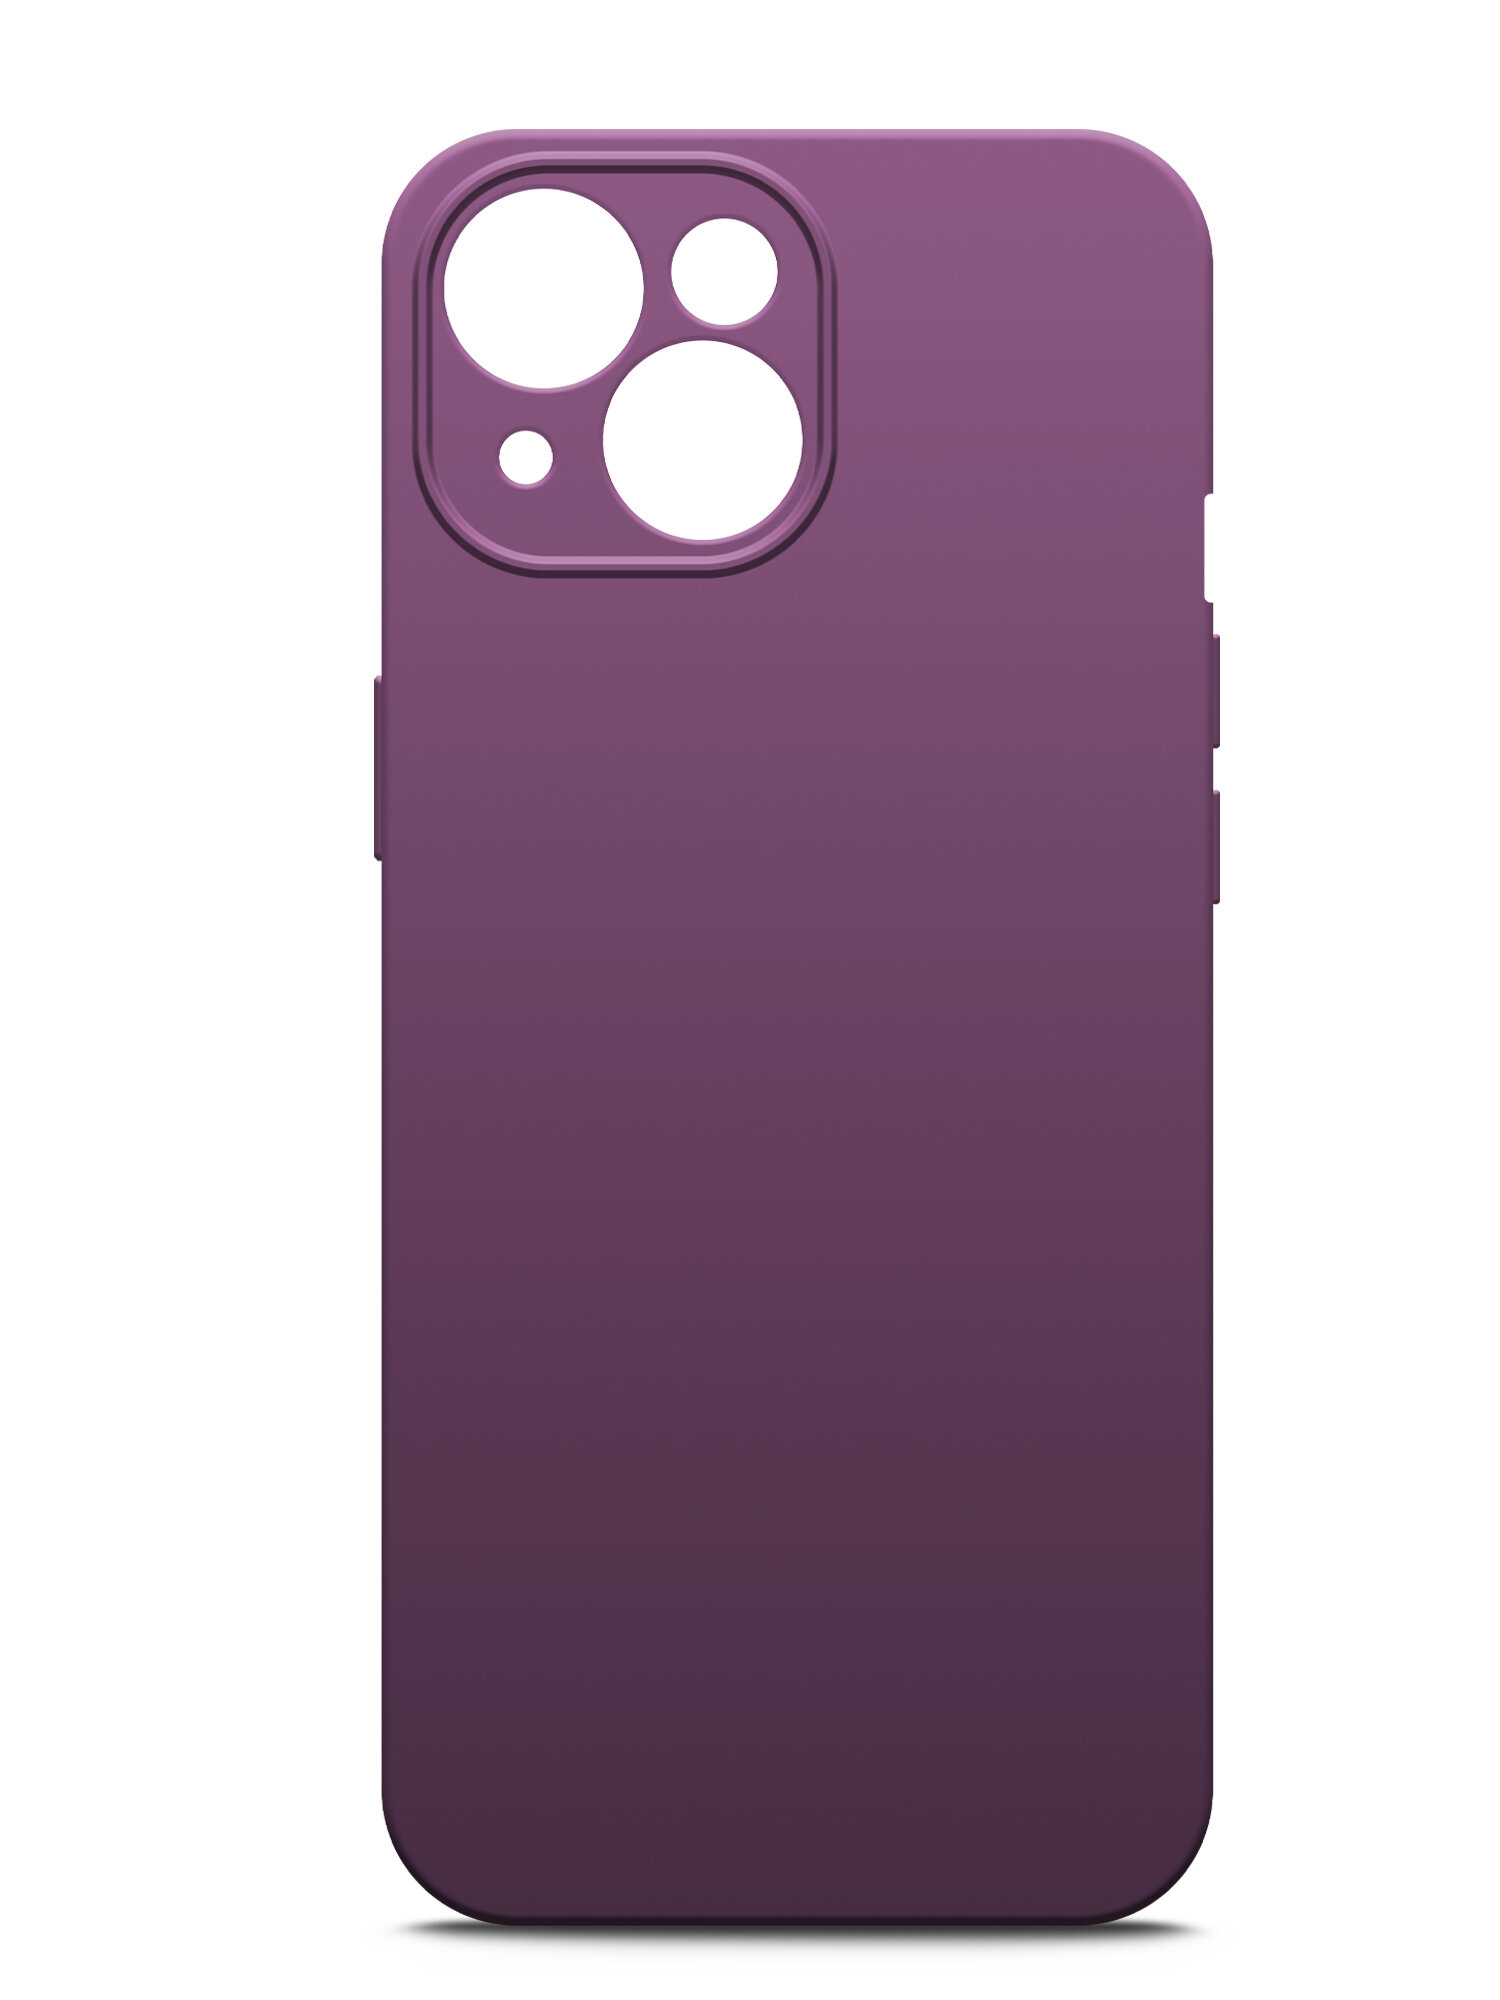 Чехол на Apple iPhone 15 (Эпл Айфон 15), фиолетовый силиконовый с защитной подкладкой из микрофибры Microfiber Case, Brozo